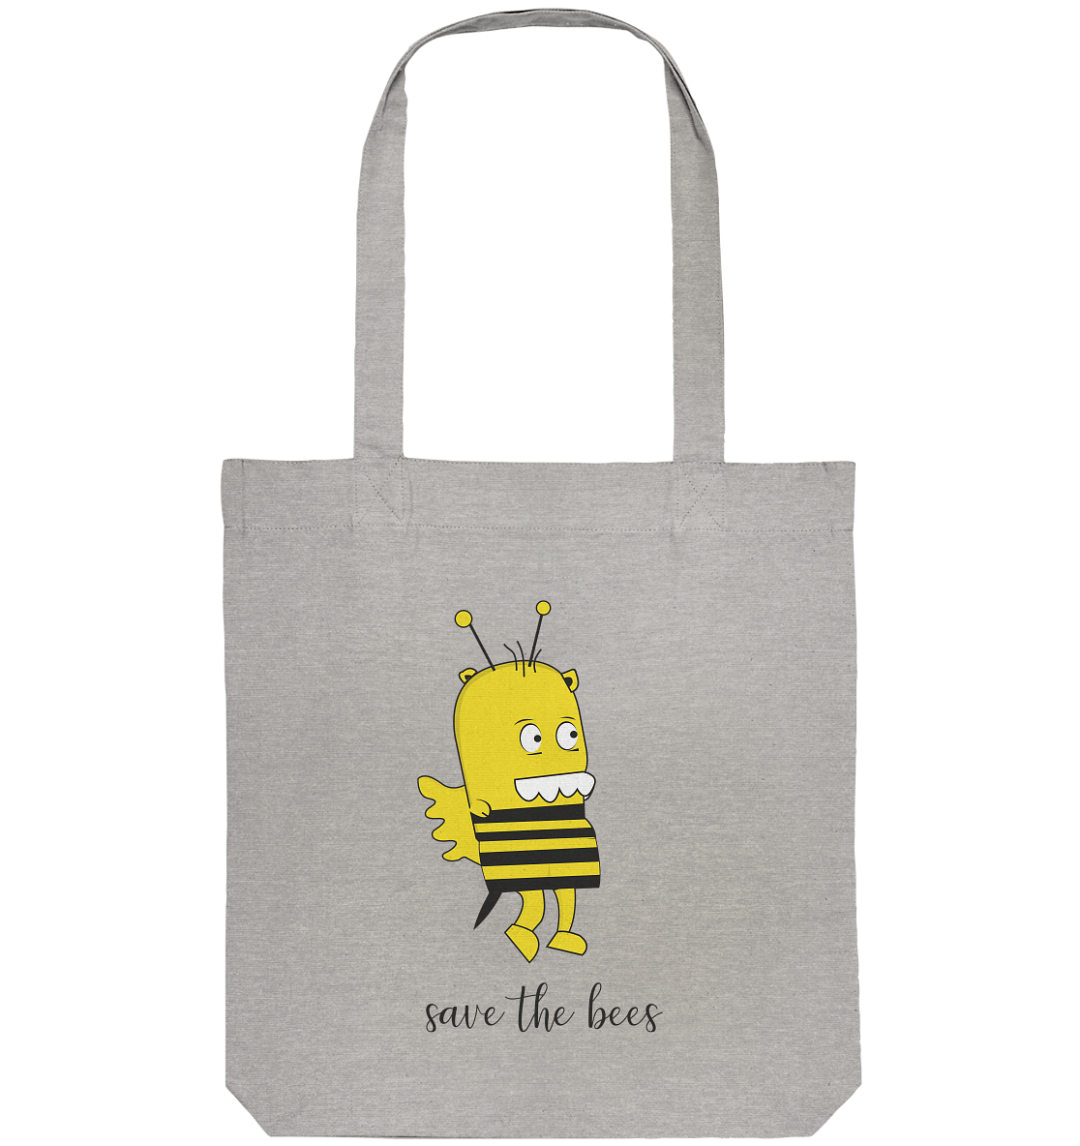 Save the Bees Motiv auf einer Tragetasche mit langem Hänkel.